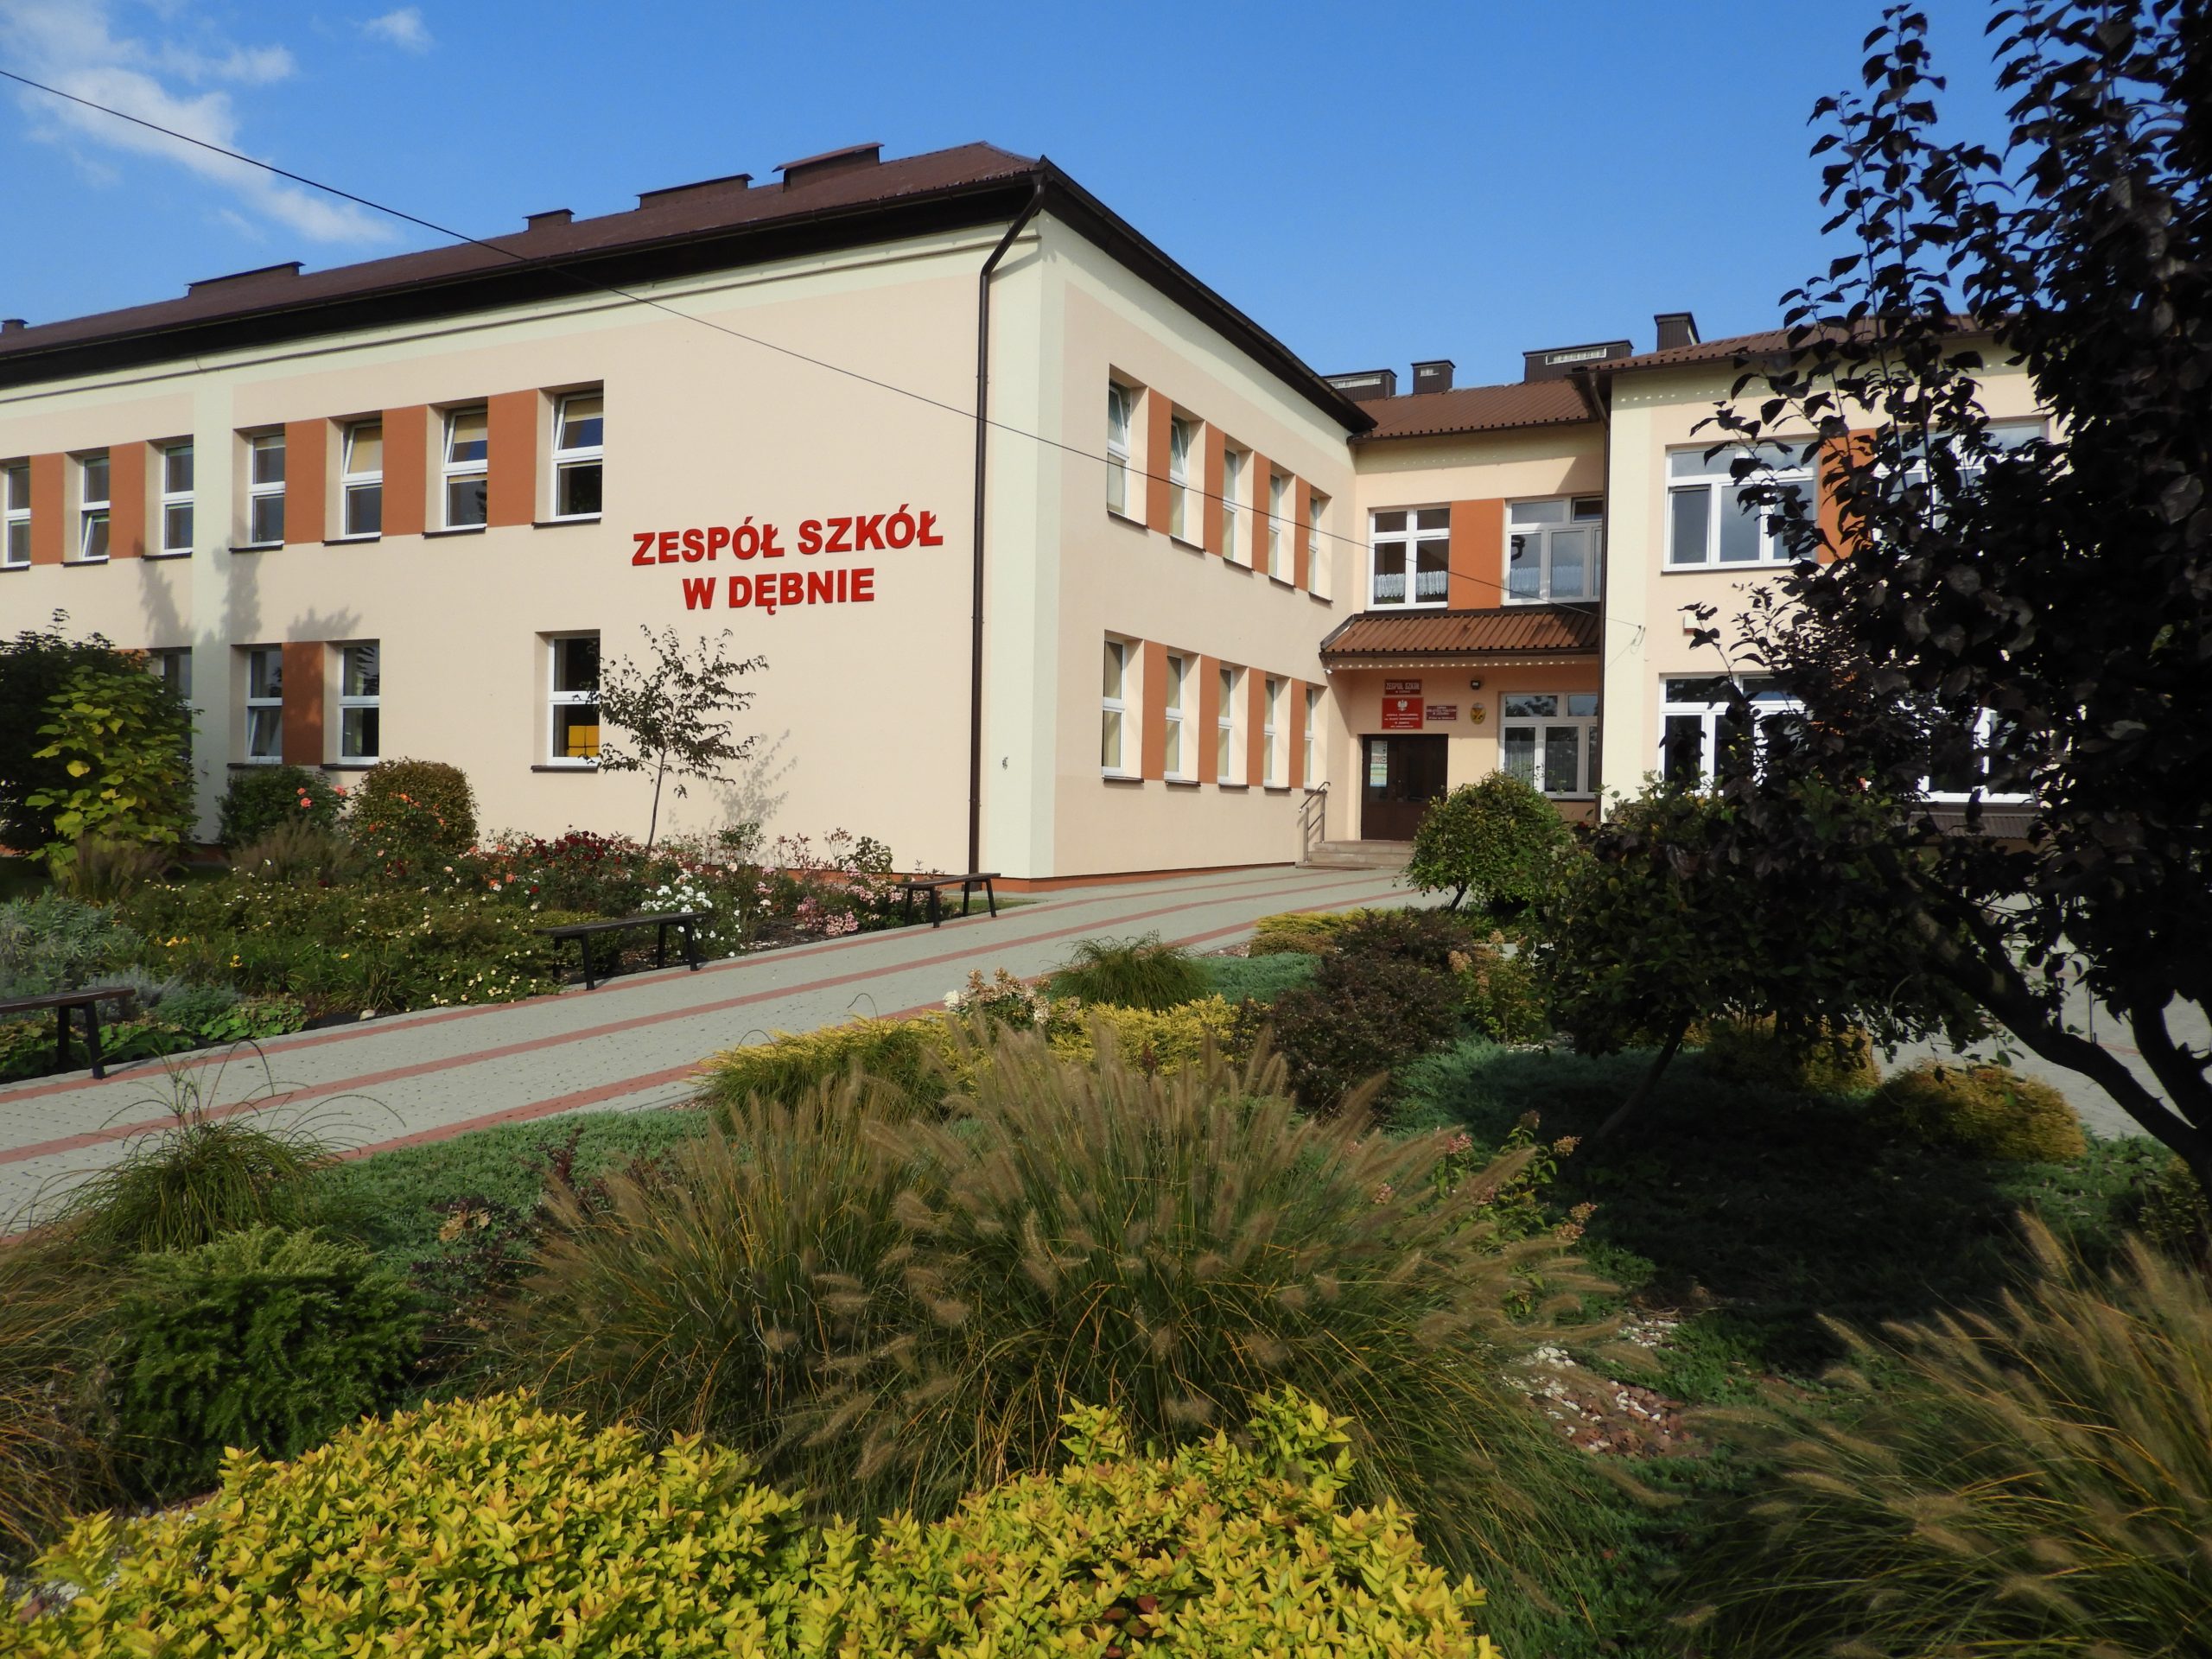 Budynek zespołu szkół w Dębnie widziany od wejścia głównego, przed budynkiem rabaty z krzewami.